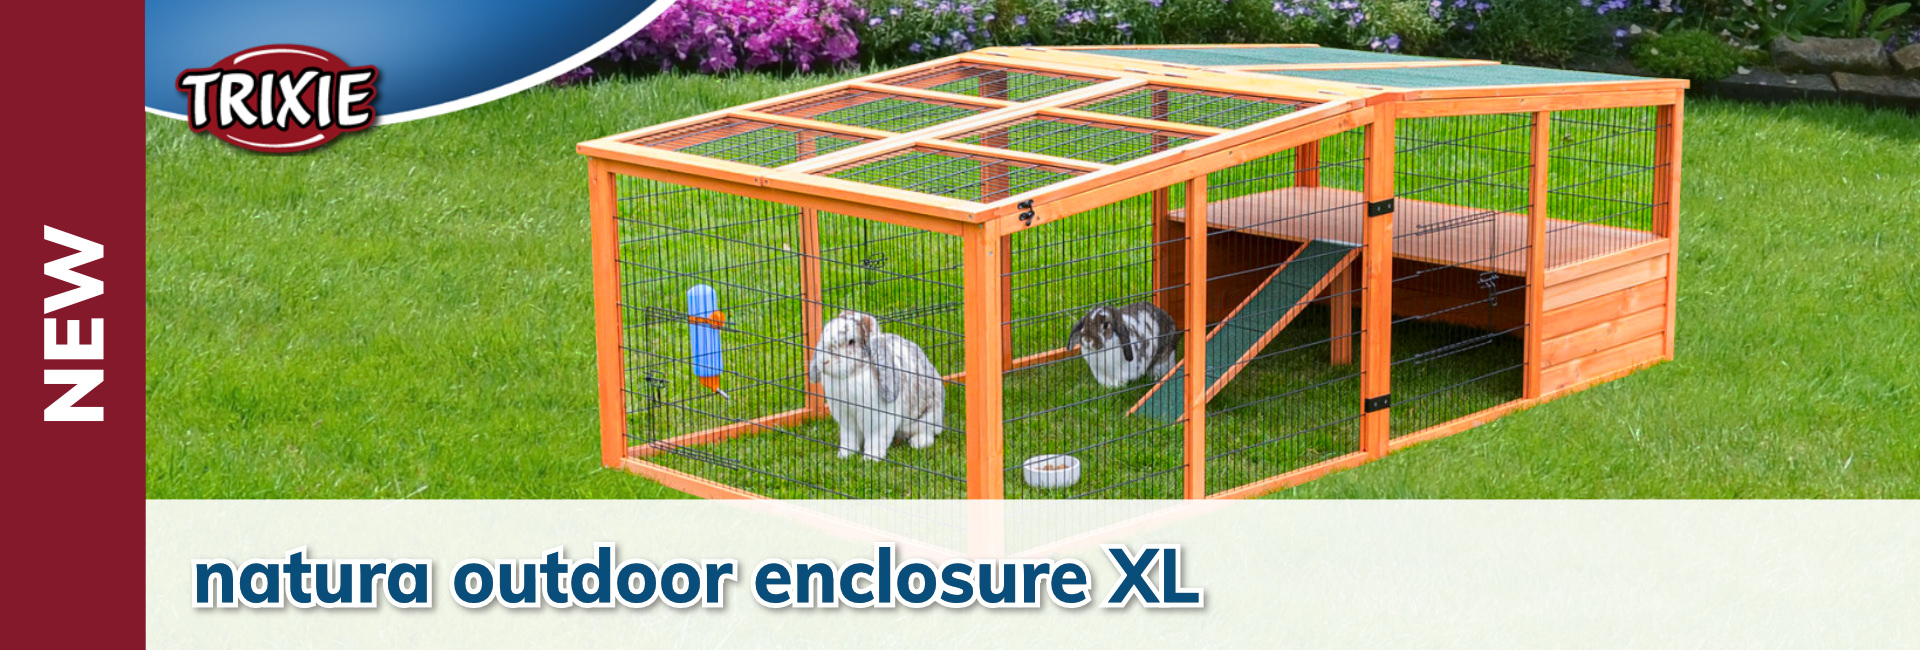 Trixie natura outdoor enclosure XL